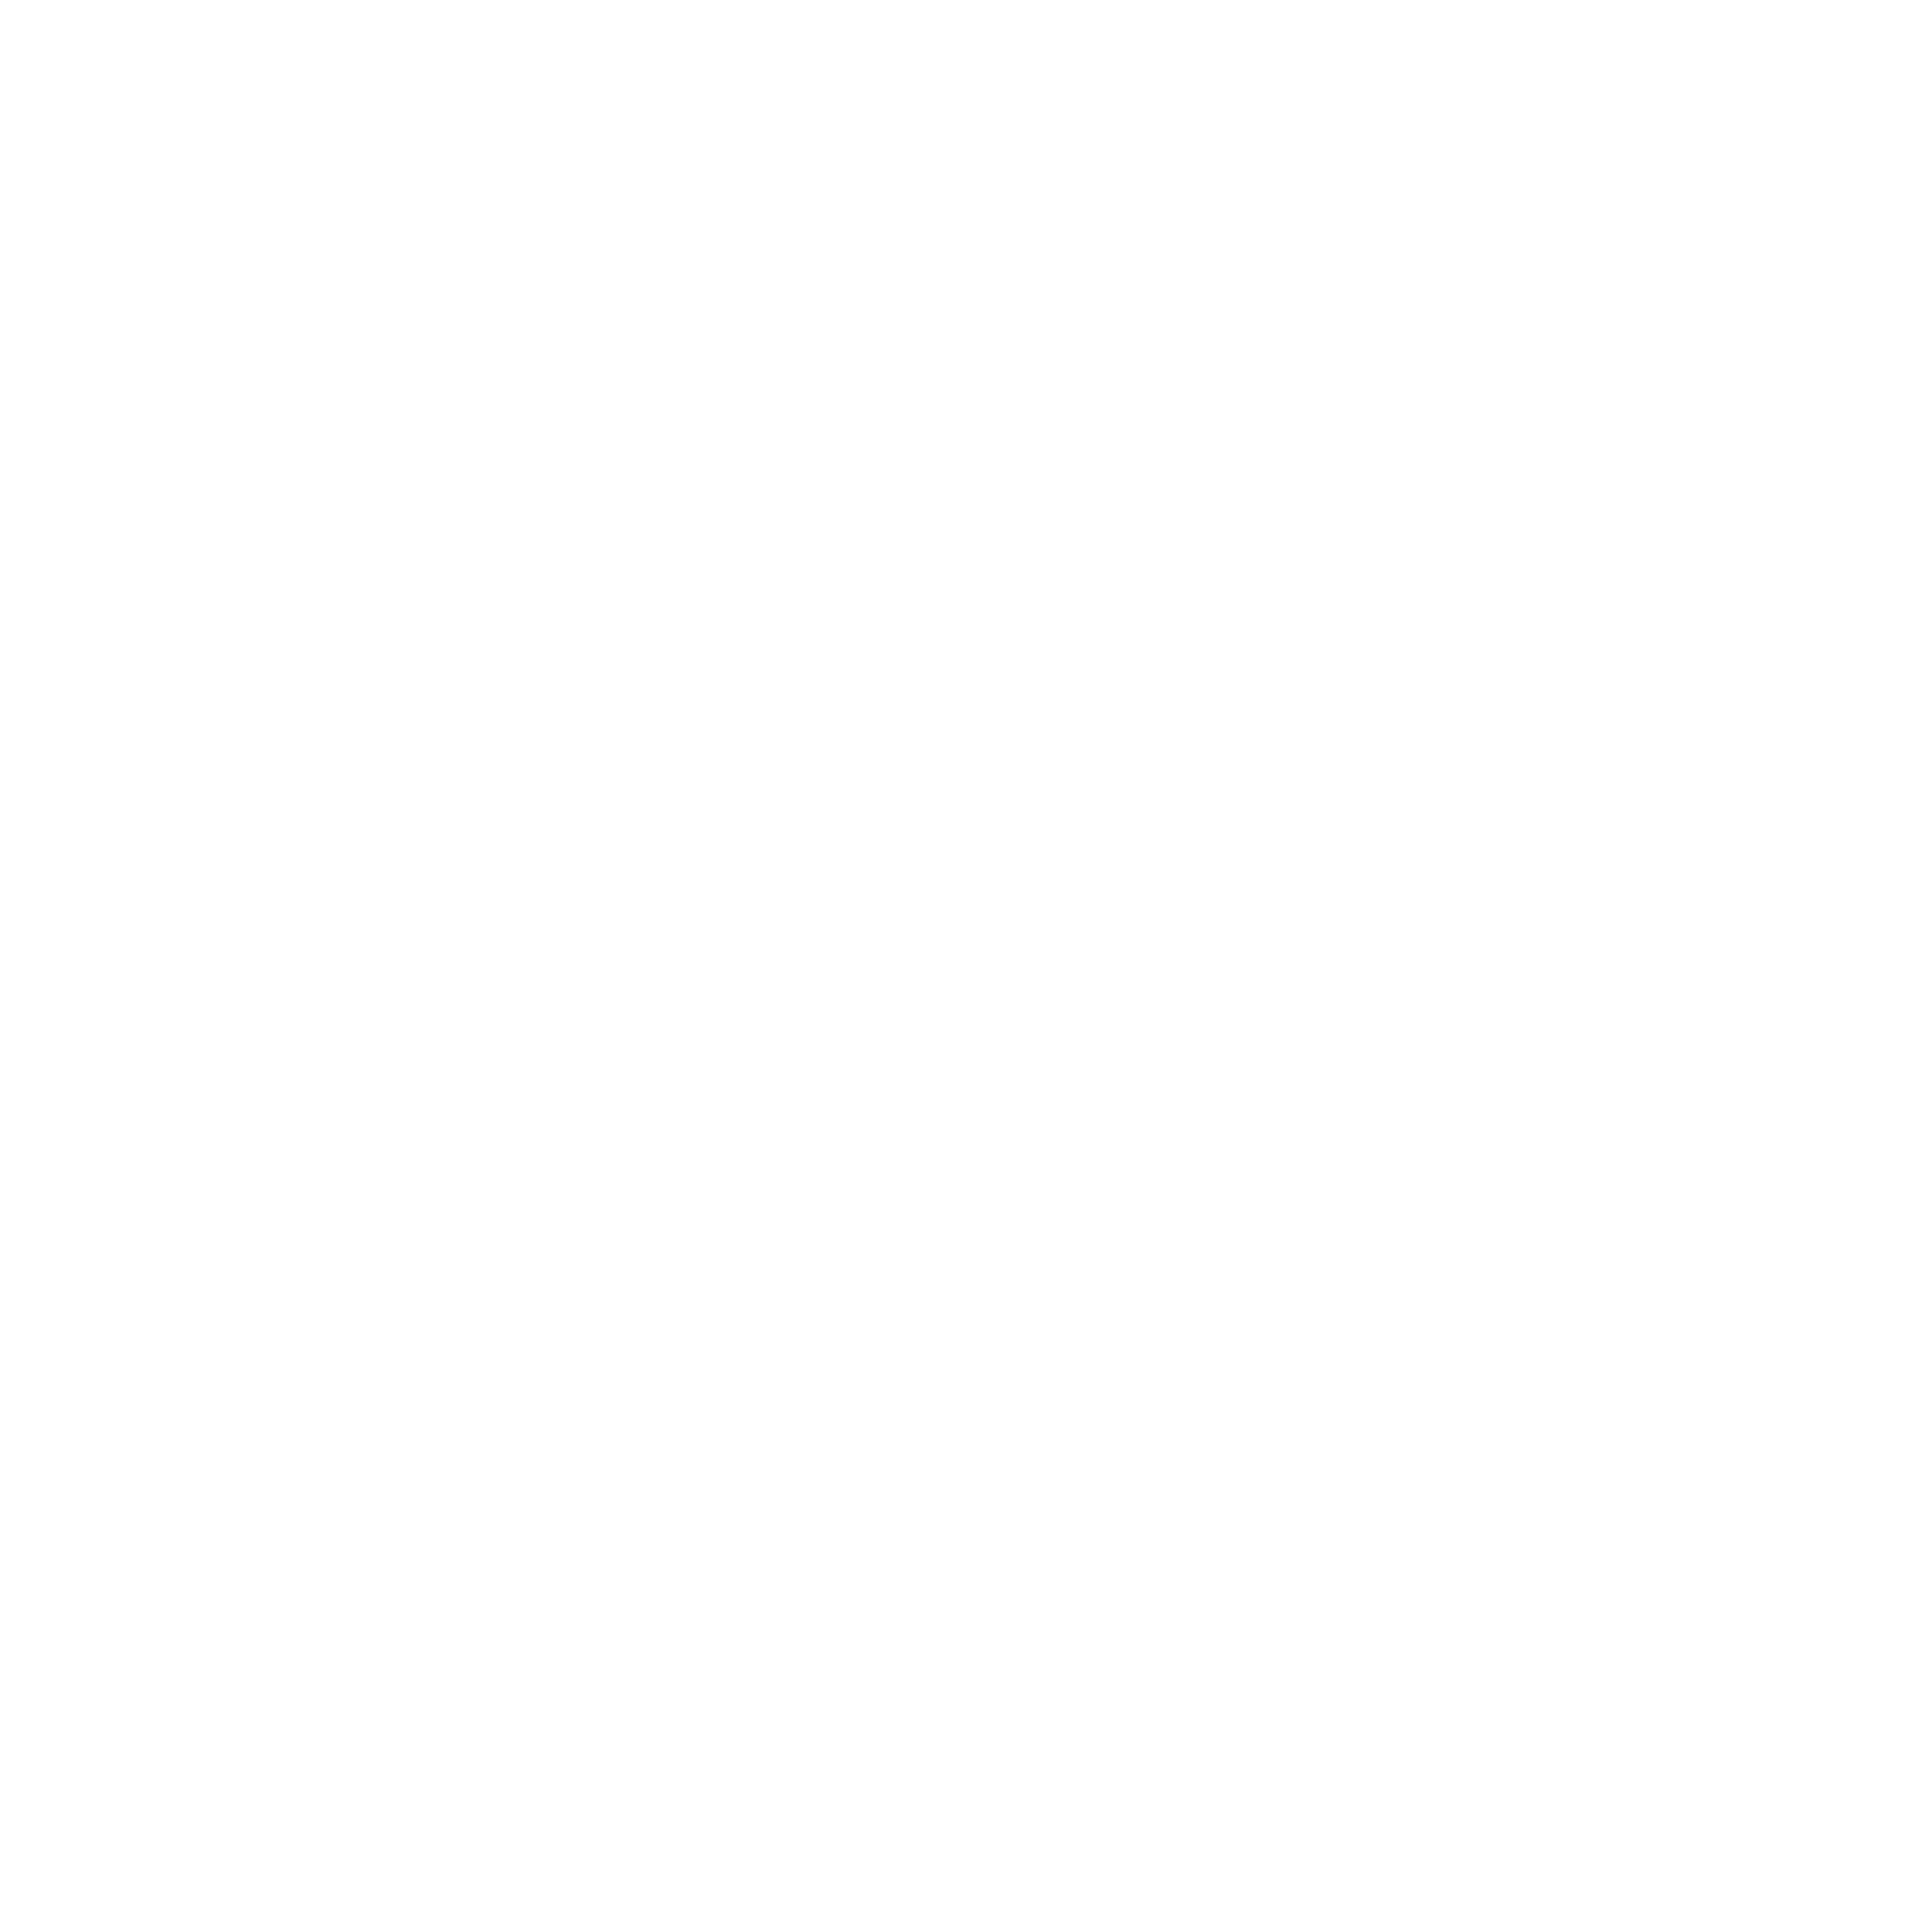 West Side Nut Club Fall Festival